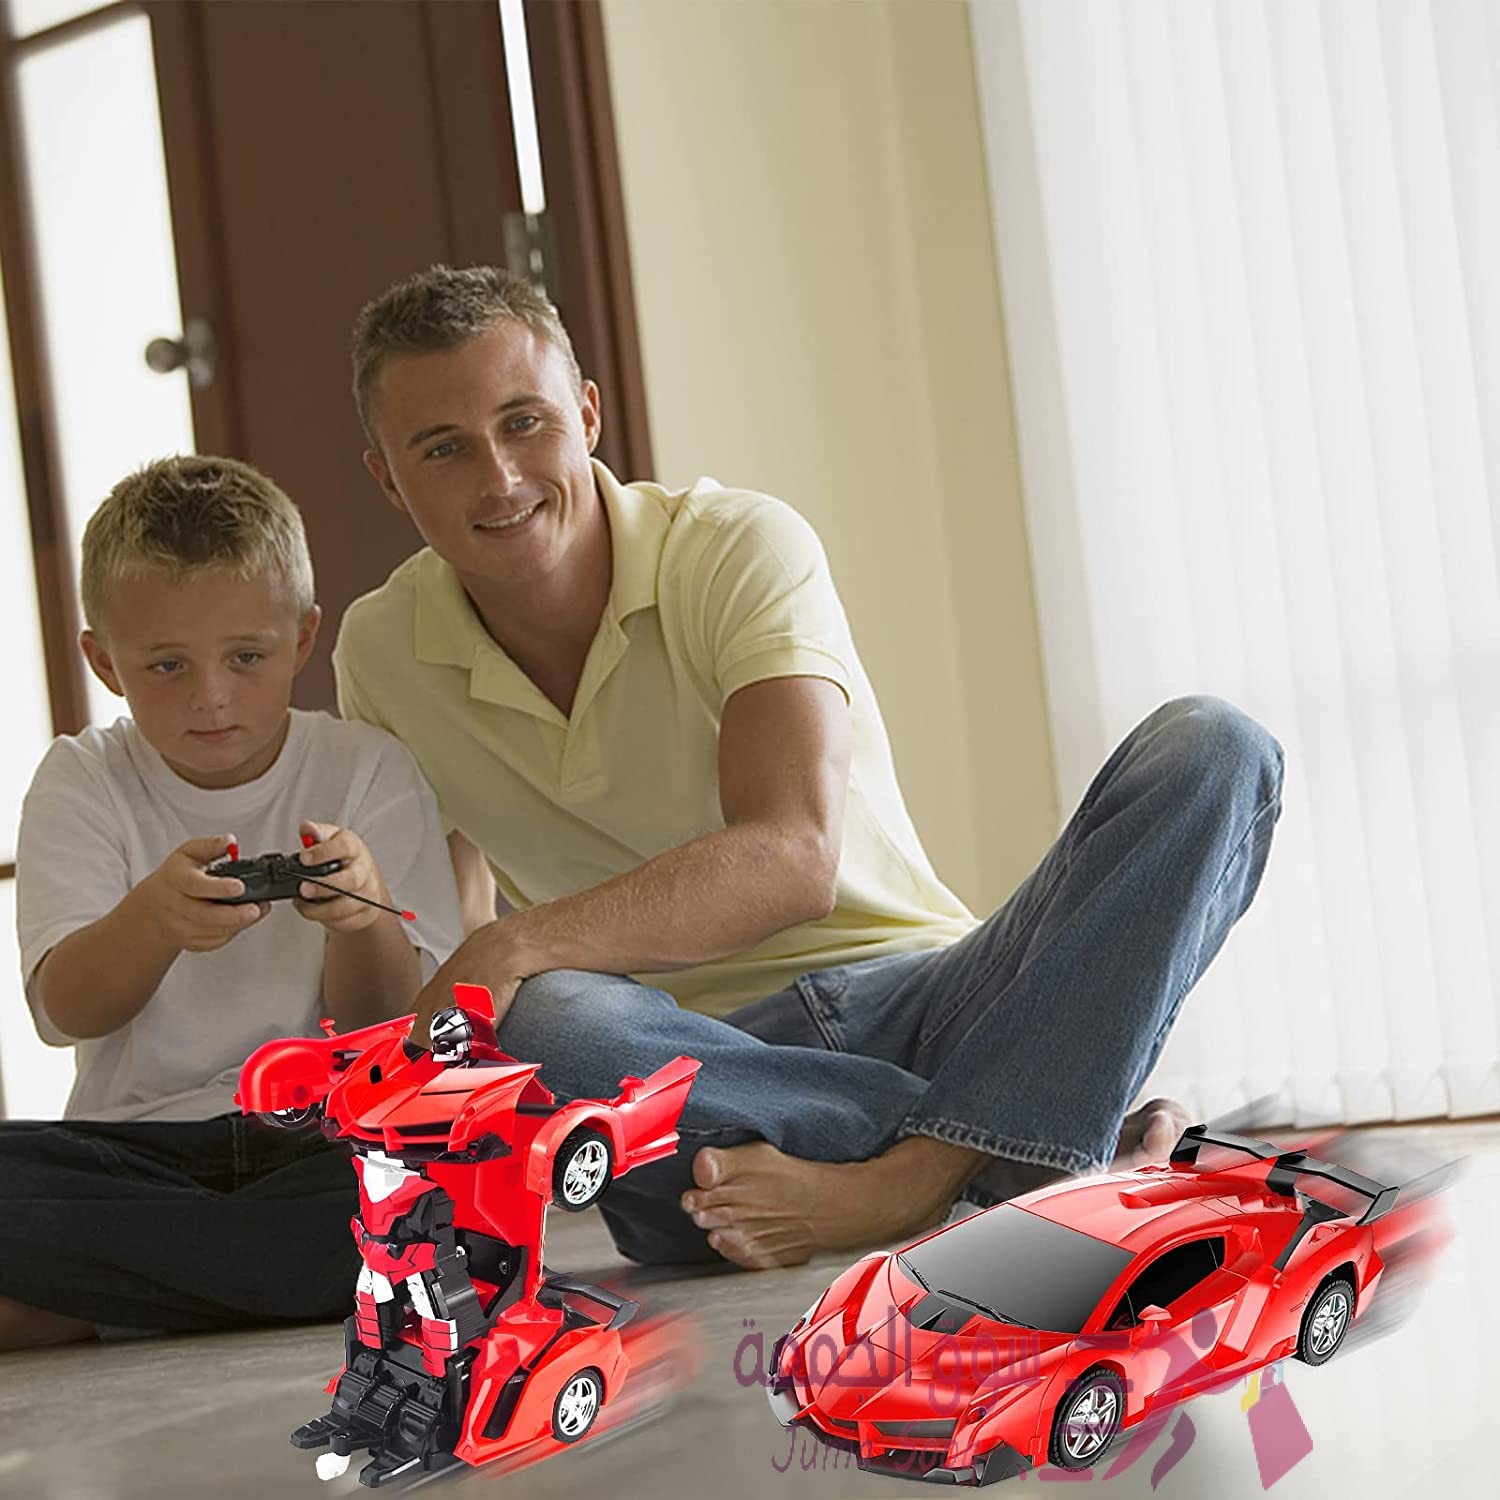 السيارة الروبوت- robot car افضل هدية لطفلك باقل سعر بالمملكة ولفترة محدودة🥳🥳🏎️🏎️🎁🎁🎁🔥🔥😍😍